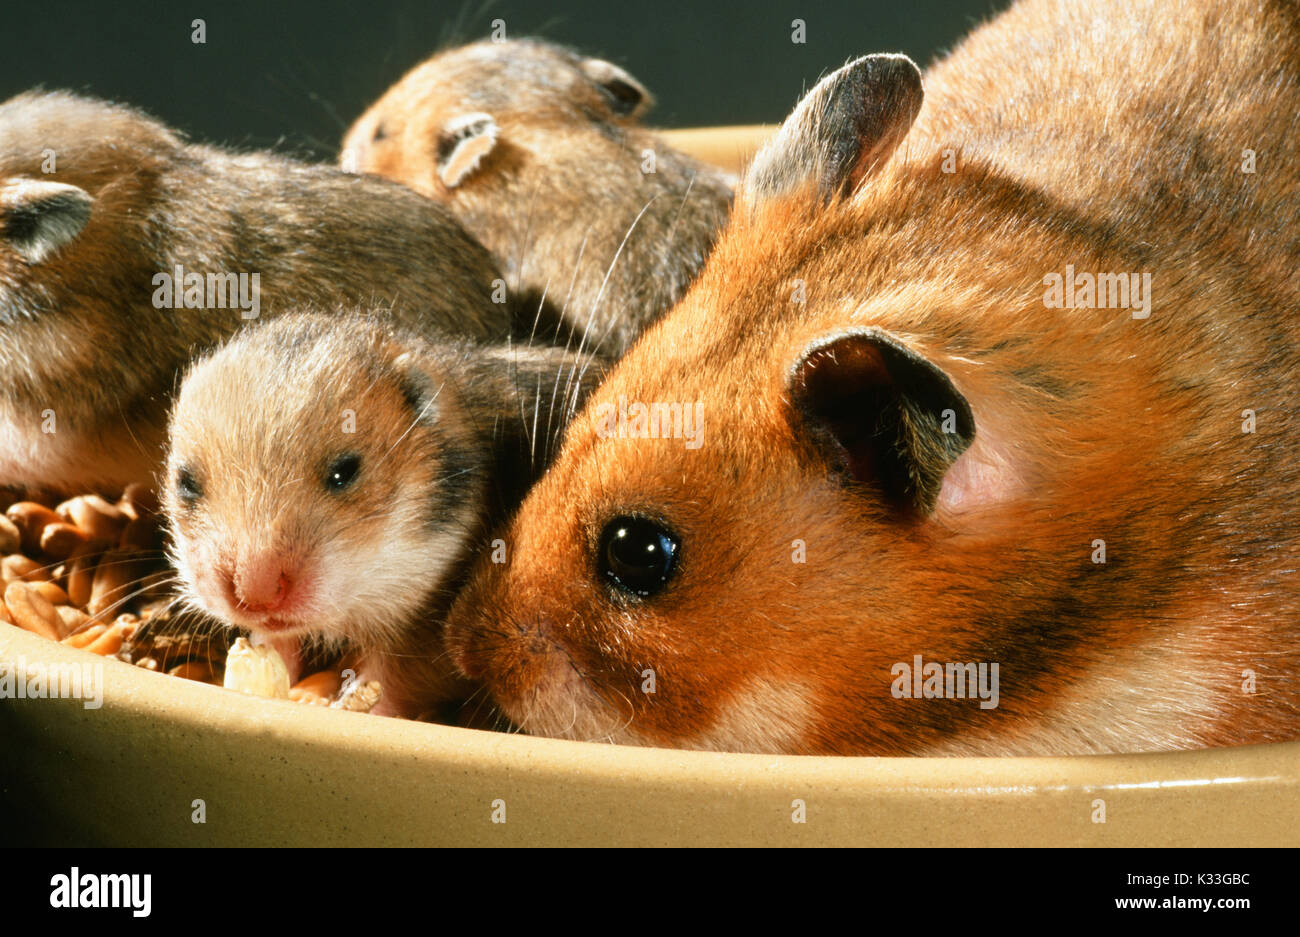 Le hamster syrien ou doré Mesocricetus auratus. Femme, droit, manger des aliments avec des jeunes mobiles, les yeux juste à s'ouvrir à 15 jours, dans un bol de nourriture. Banque D'Images